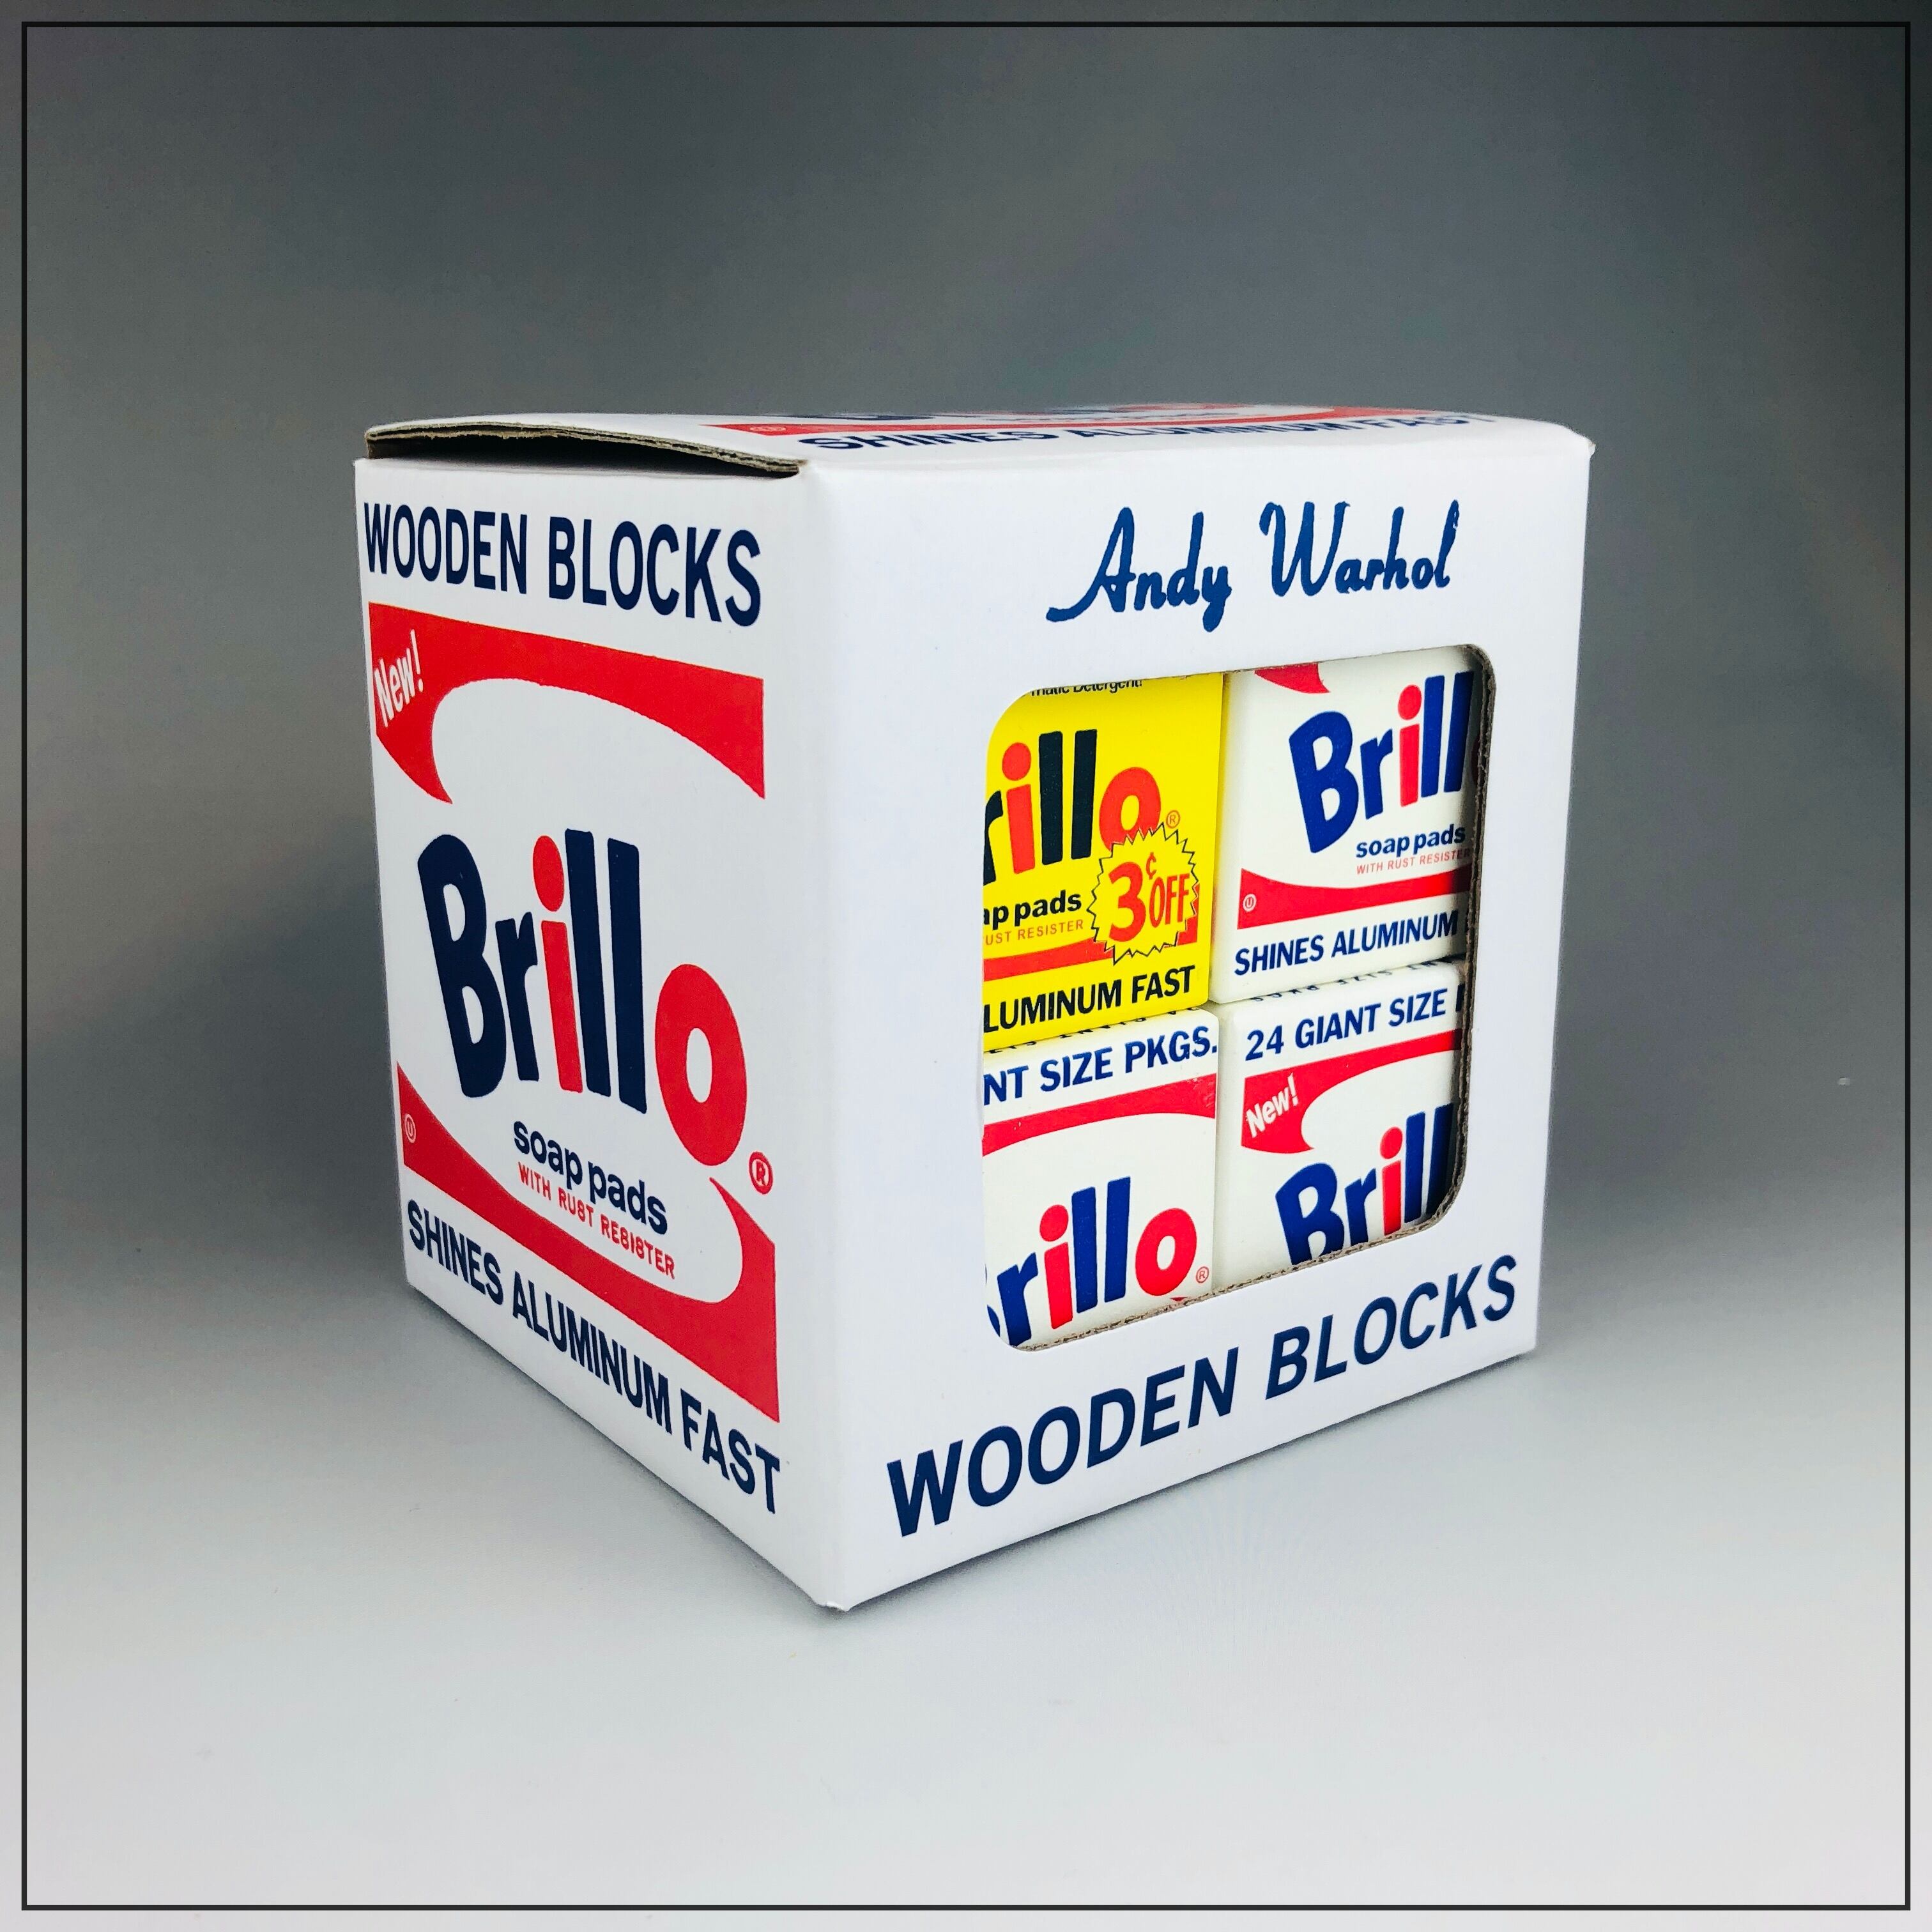 アンディ ウォーホル - Brillo Wooden Blocks - | EspritNouveauGallery